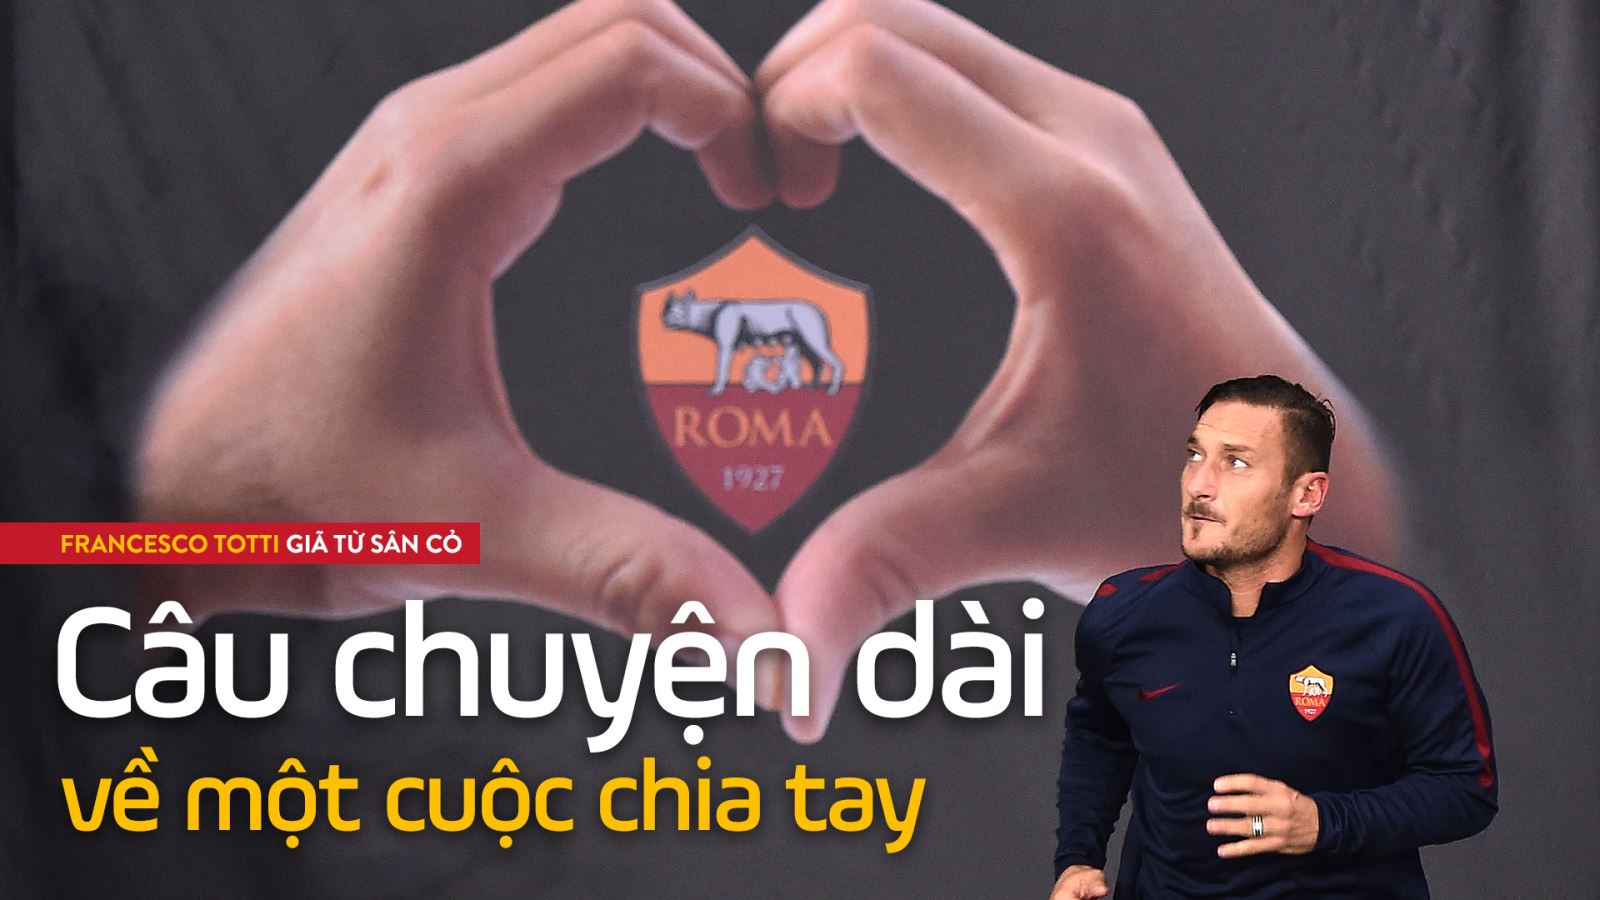 Francesco Totti giã từ sân cỏ: Câu chuyện dài về một cuộc chia tay